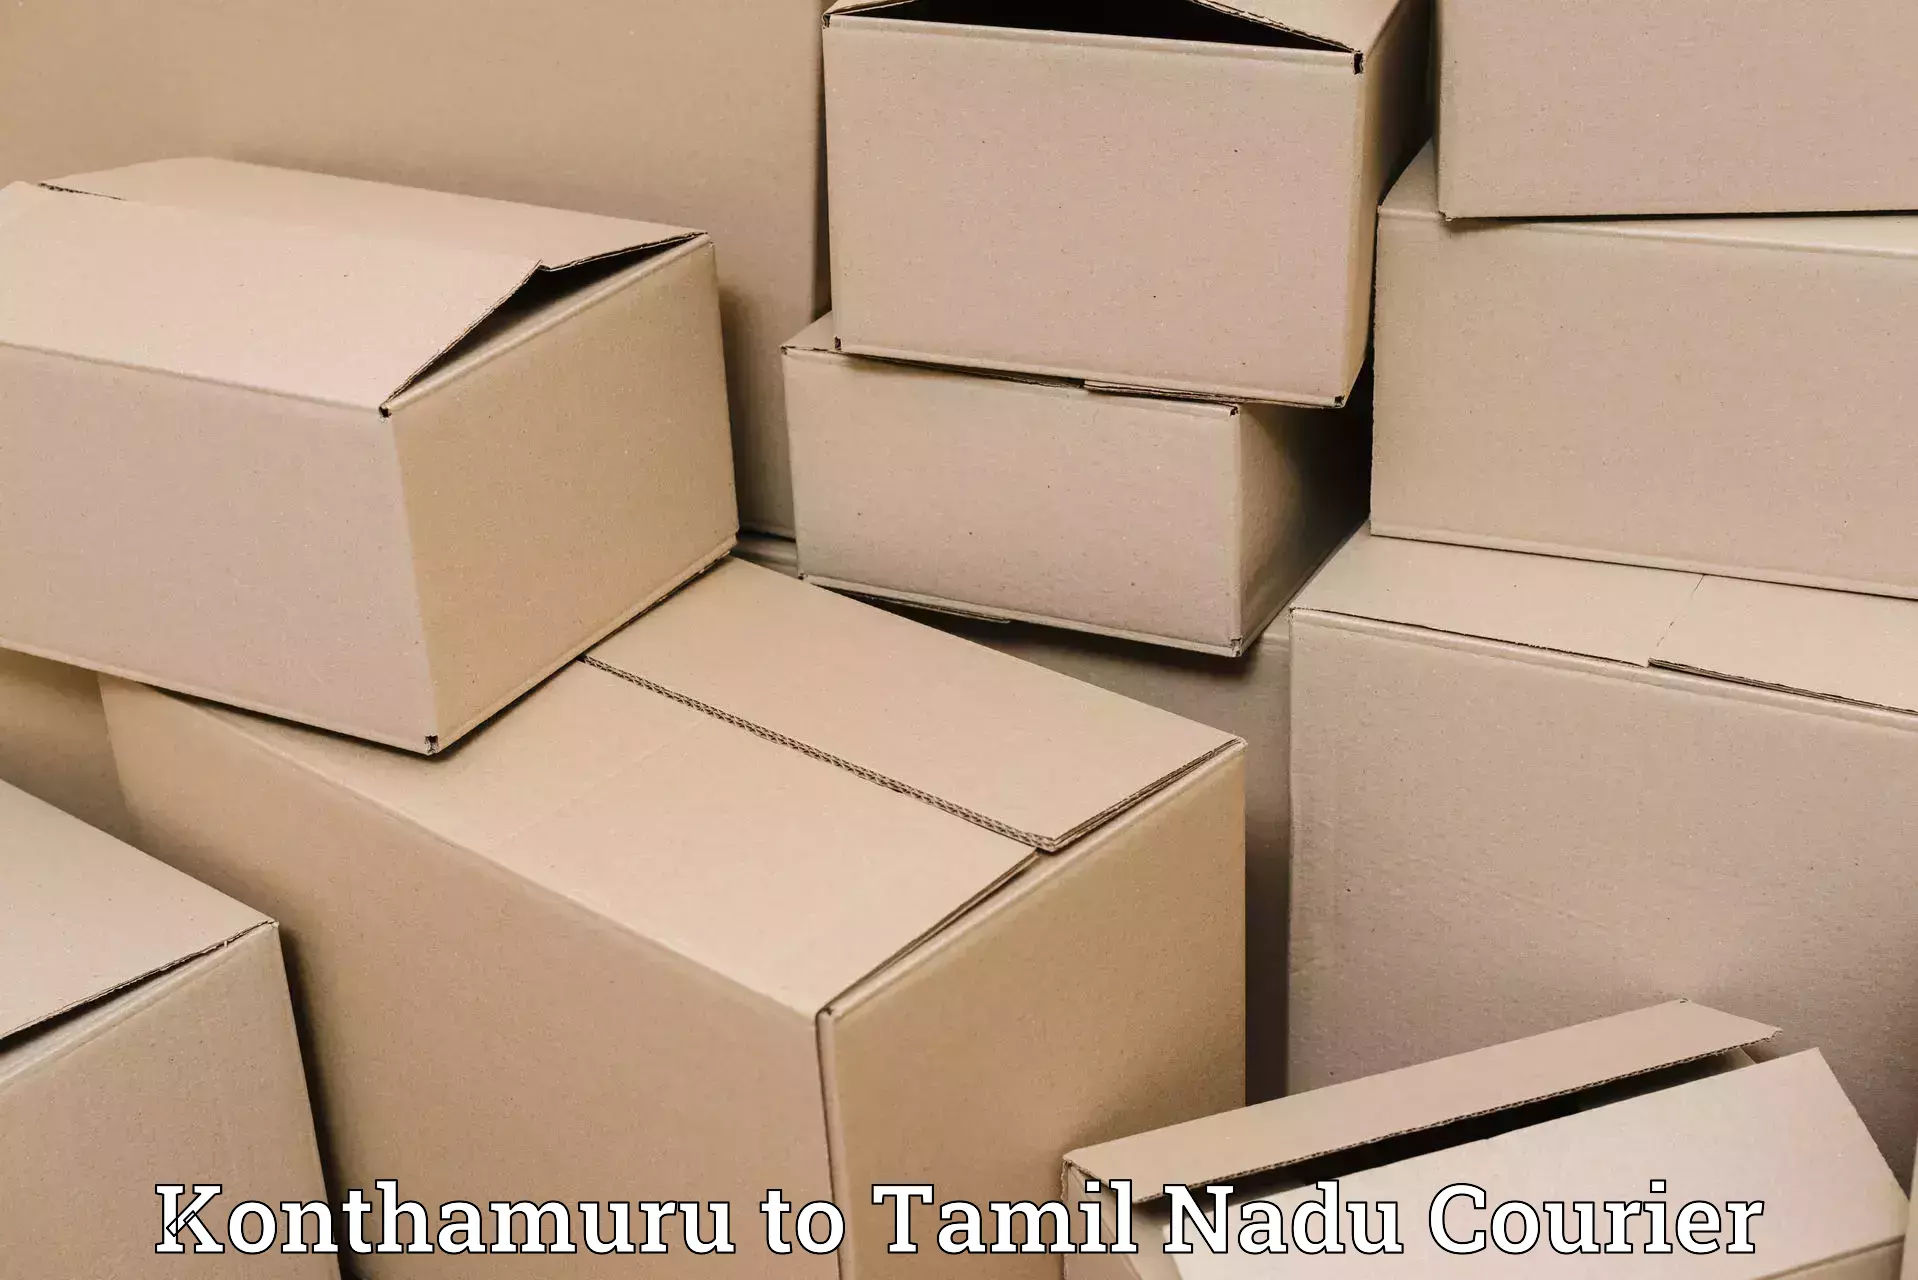 Courier dispatch services Konthamuru to Gudiyattam